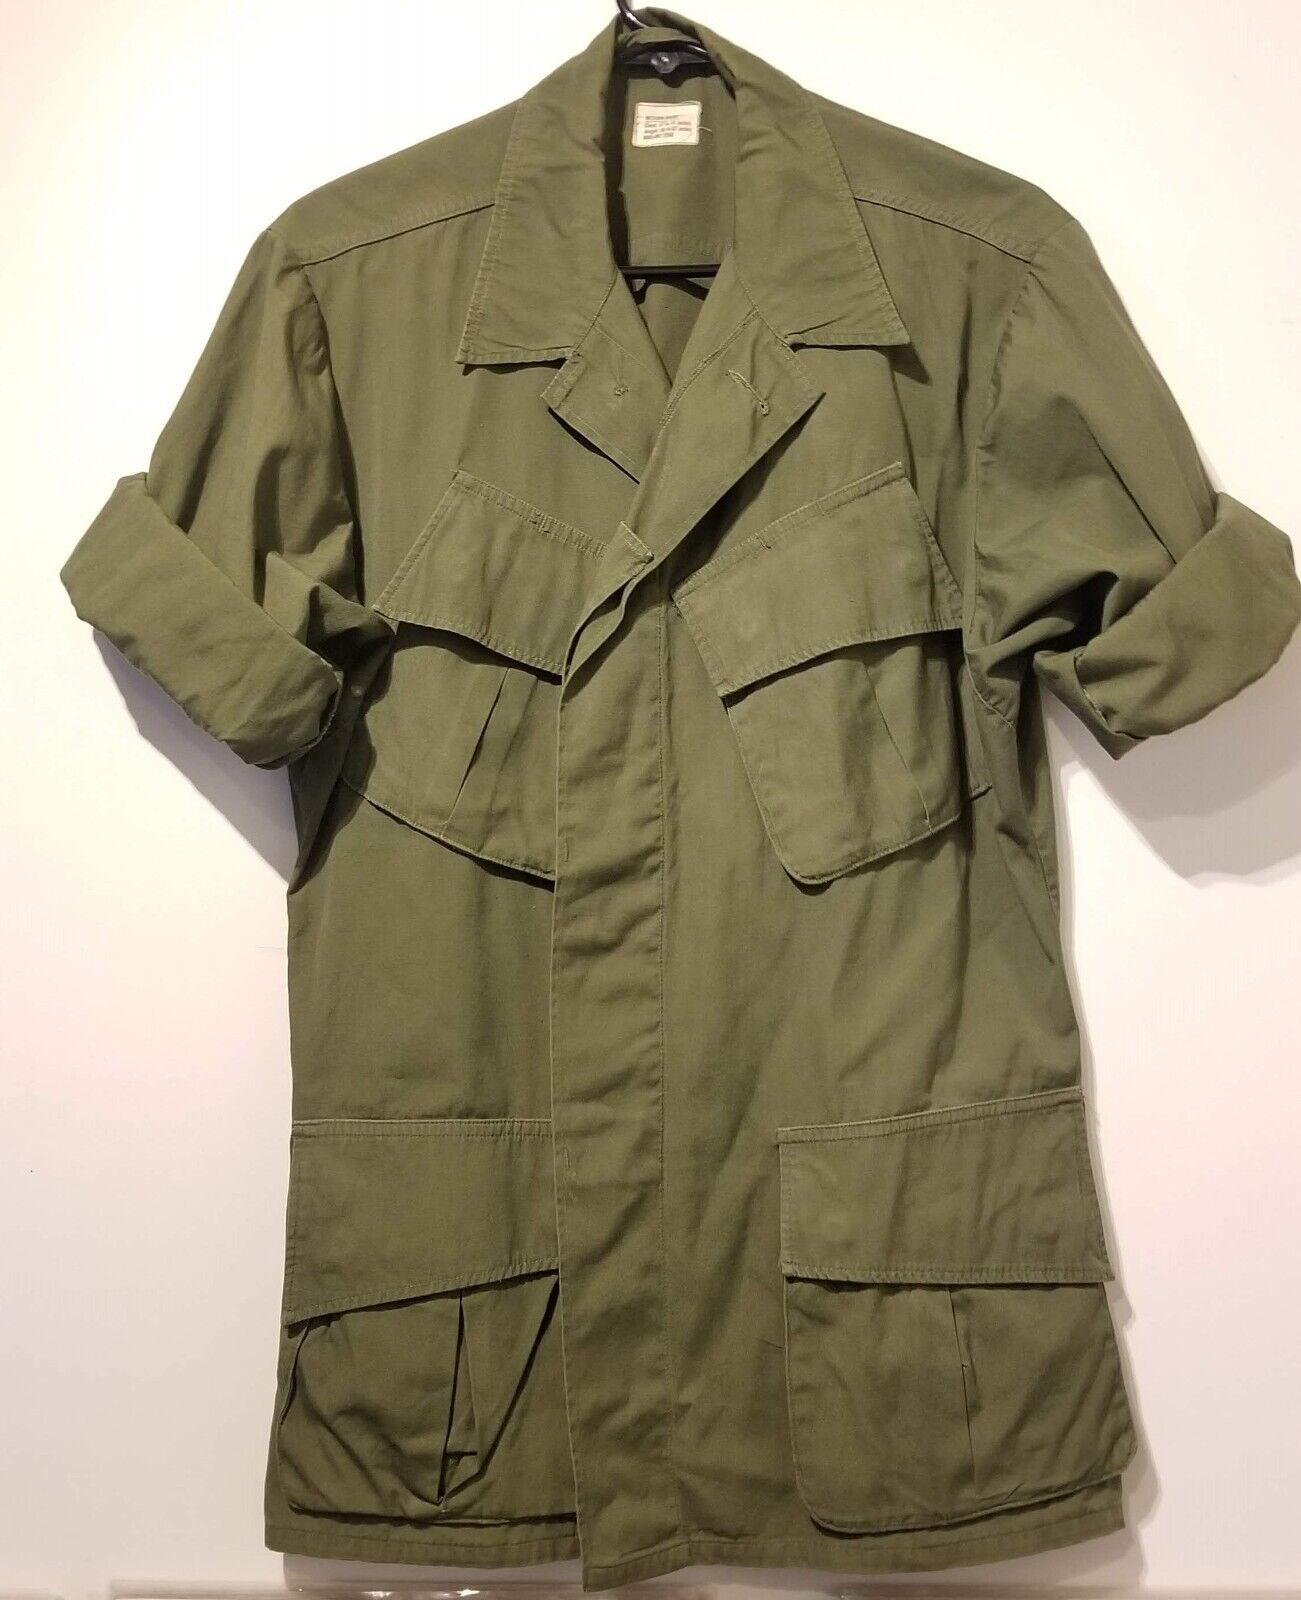 RARE 1967 Poplin (not ripstop) OG-107 Tropical Pattern Jacket Size Medium Short